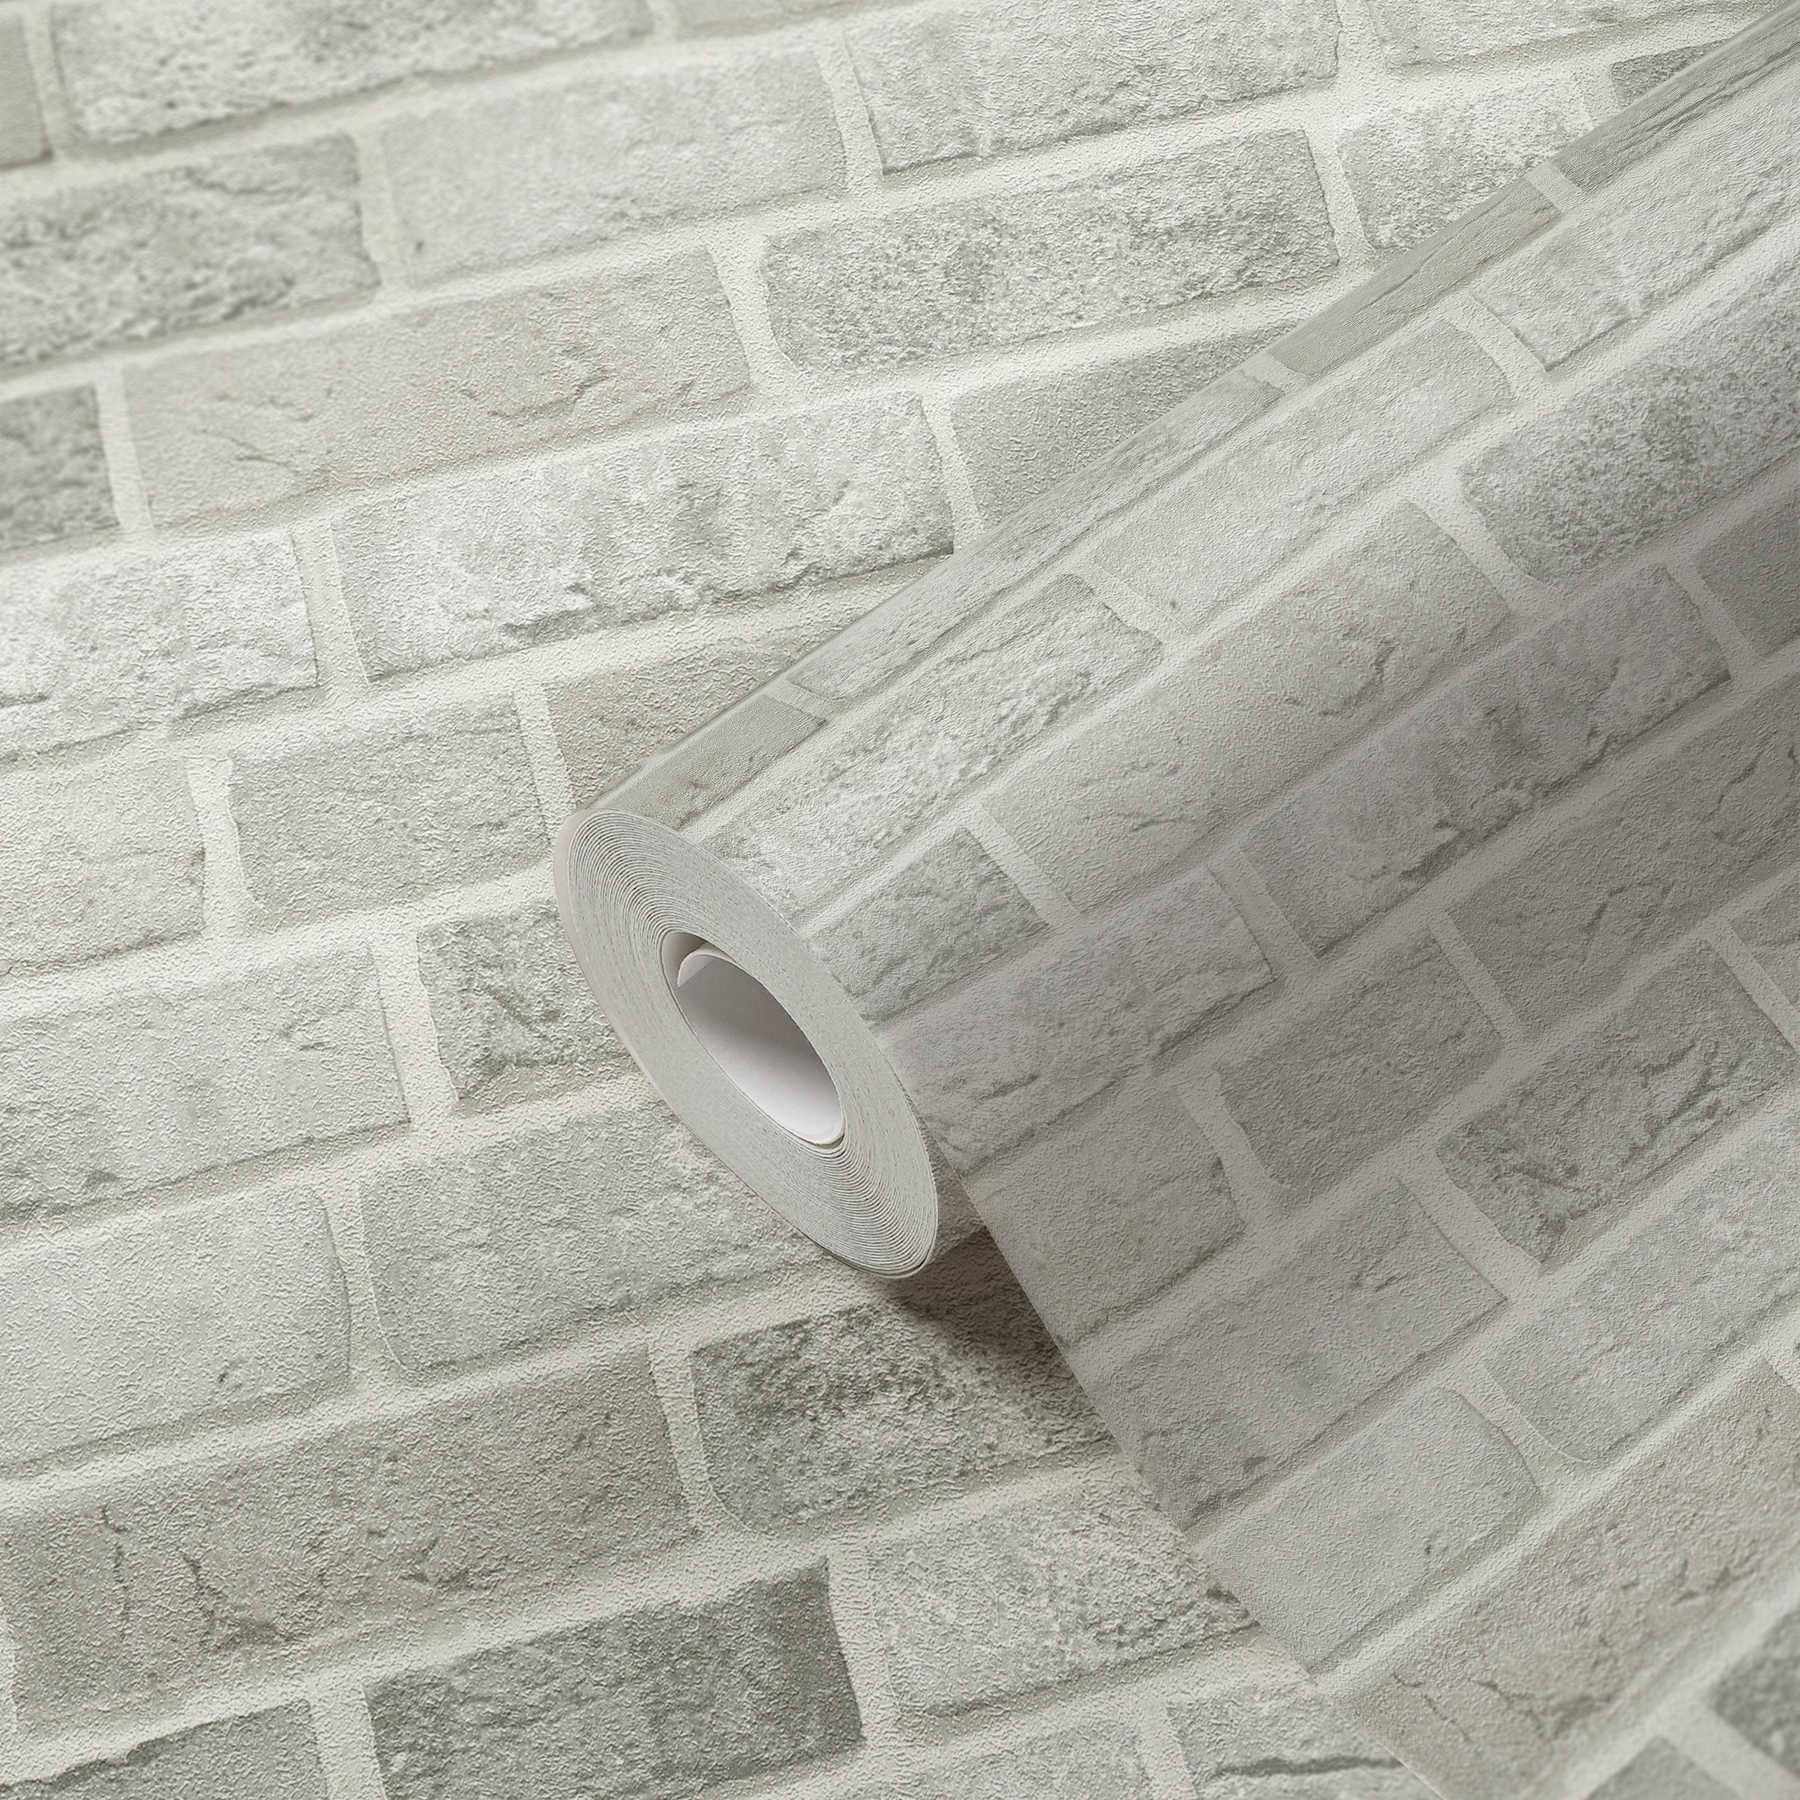             Papier peint mur de briques Design 3D Aspect pierre - gris, blanc
        